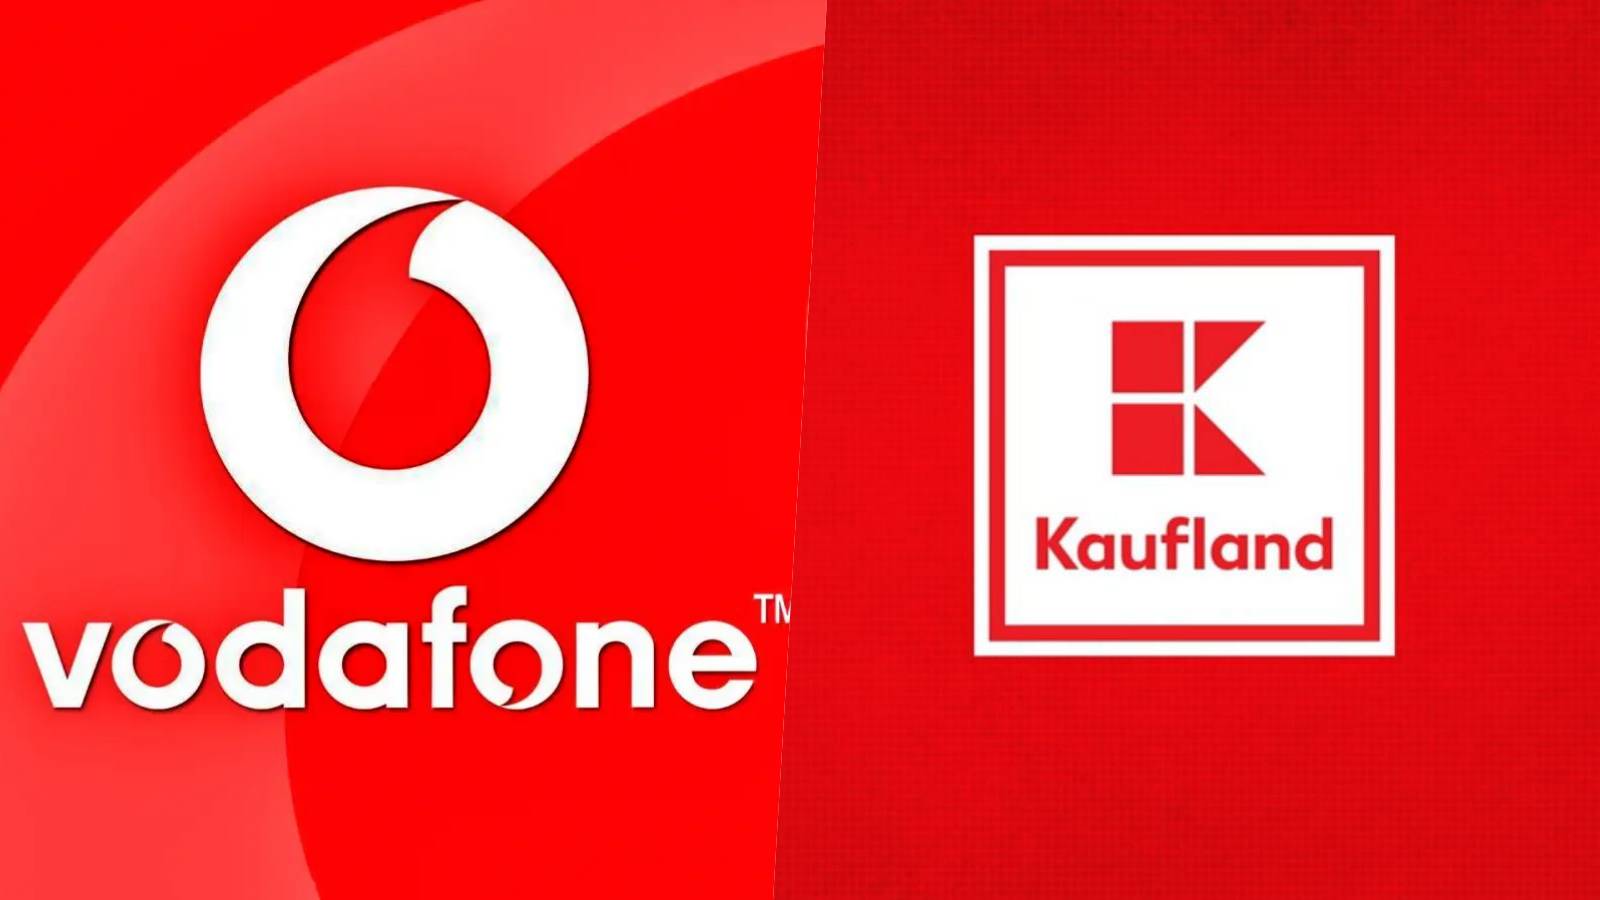 Vodafone Kaufland Surprind Romanii da GRATUIT Oamenilor Acum